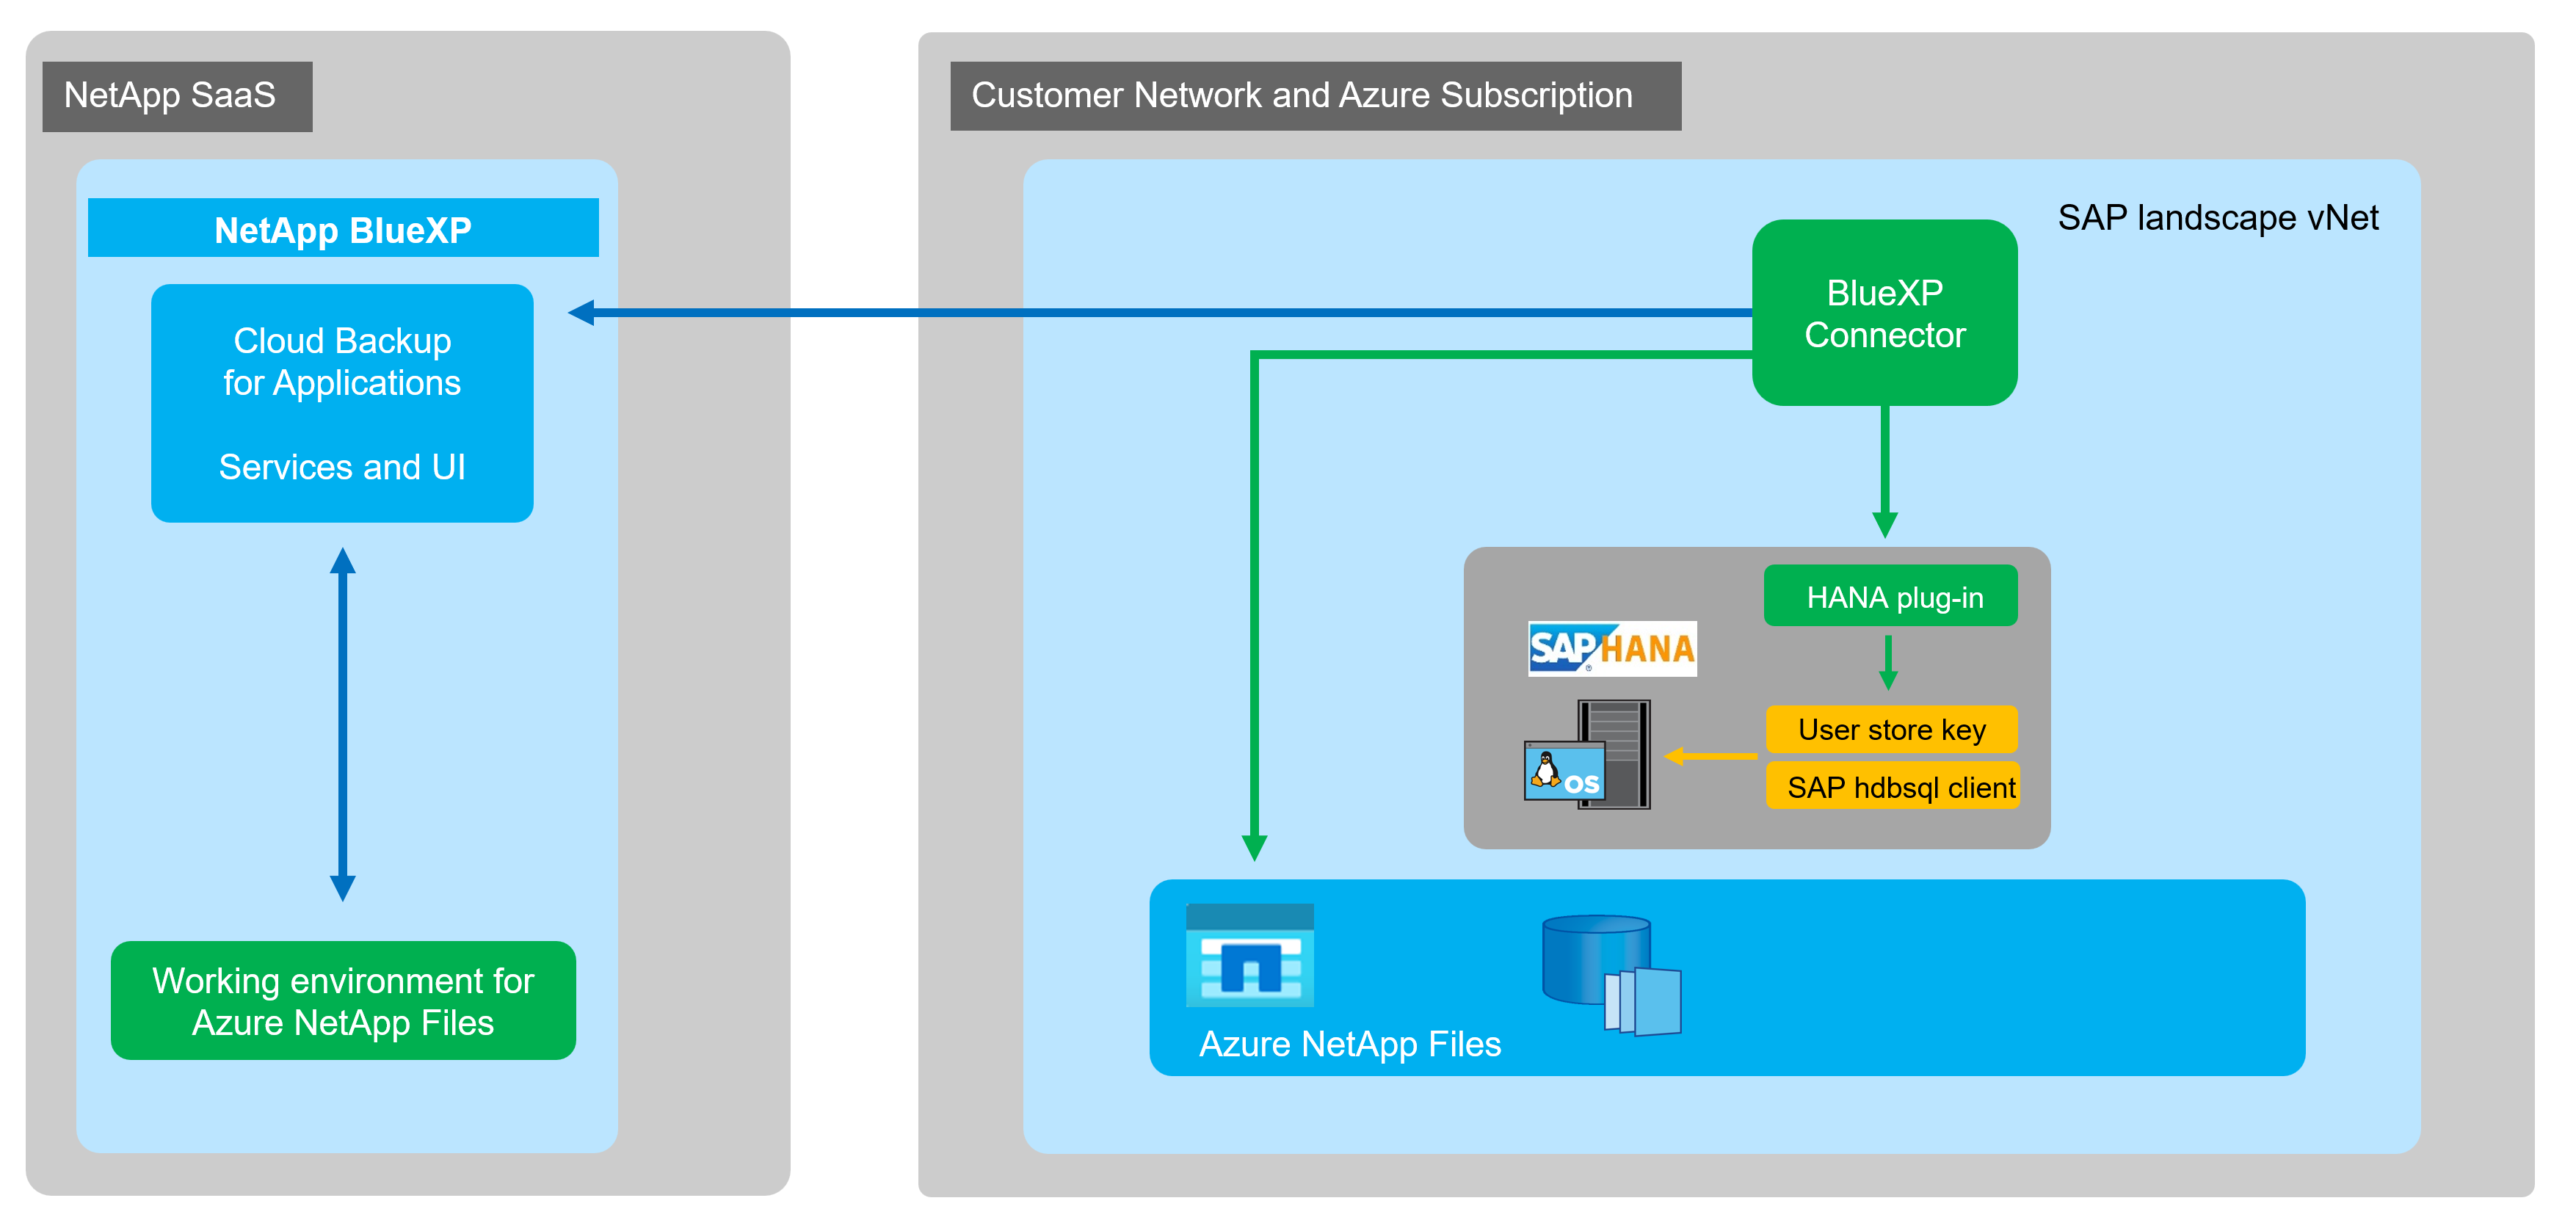 この図は、NetApp SaaSの基本アーキテクチャとお客様のネットワーク、Azureサブスクリプションを組み合わせたものです。